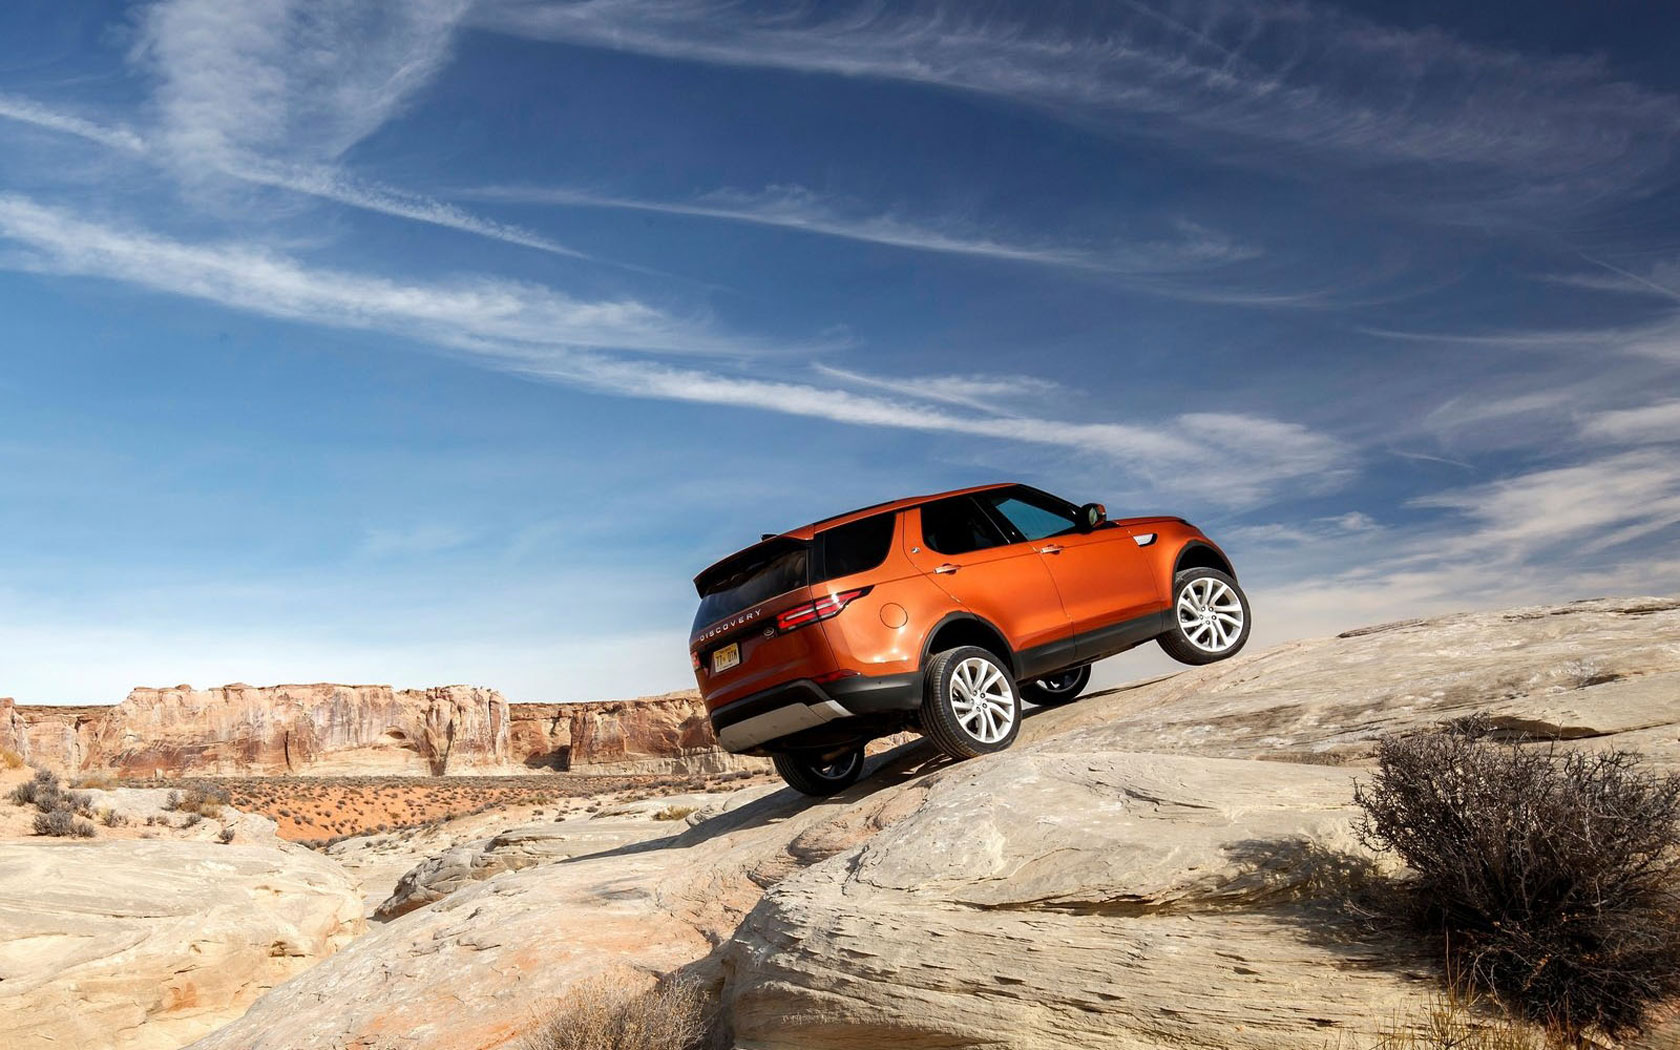 Land Rover Discovery 5. Land Rover Discovery 2016. Land Rover Discovery 70 цвета Namib Orange.. Дискавери на дороге. Дискавери 16